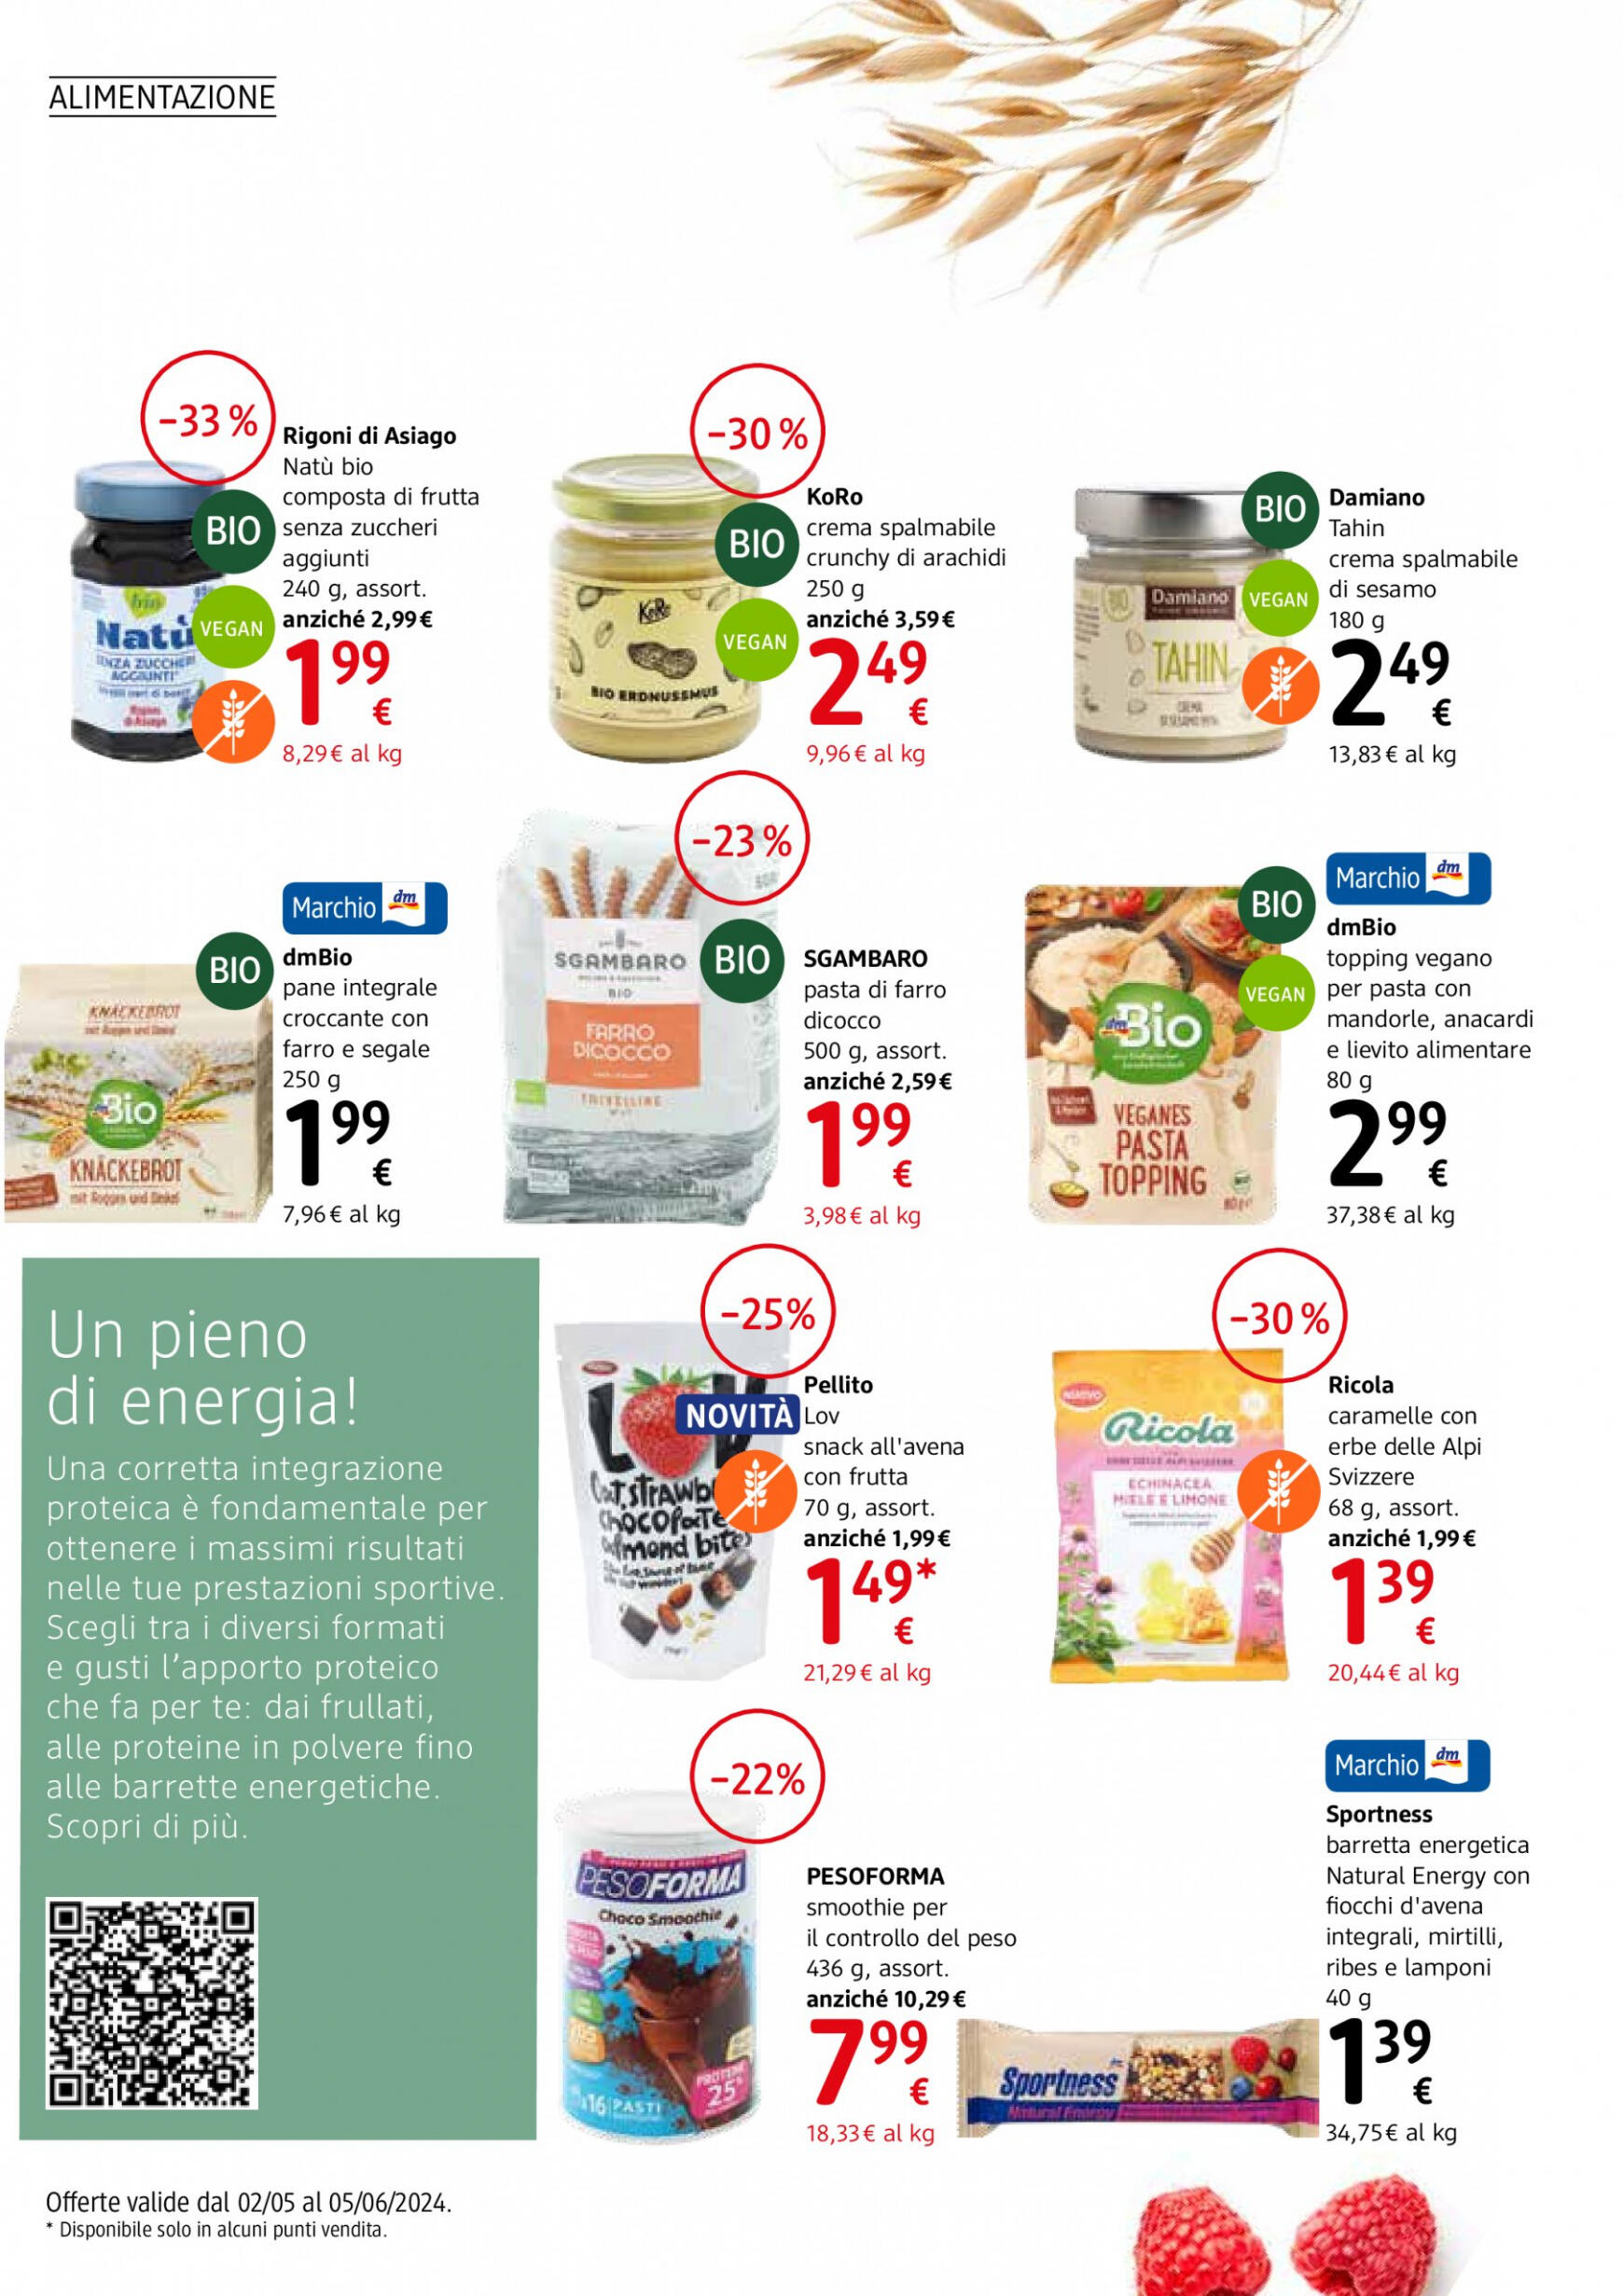 dm-drogerie-markt - Nuovo volantino dm drogerie markt - Journal 02.05. - 05.06. - page: 10